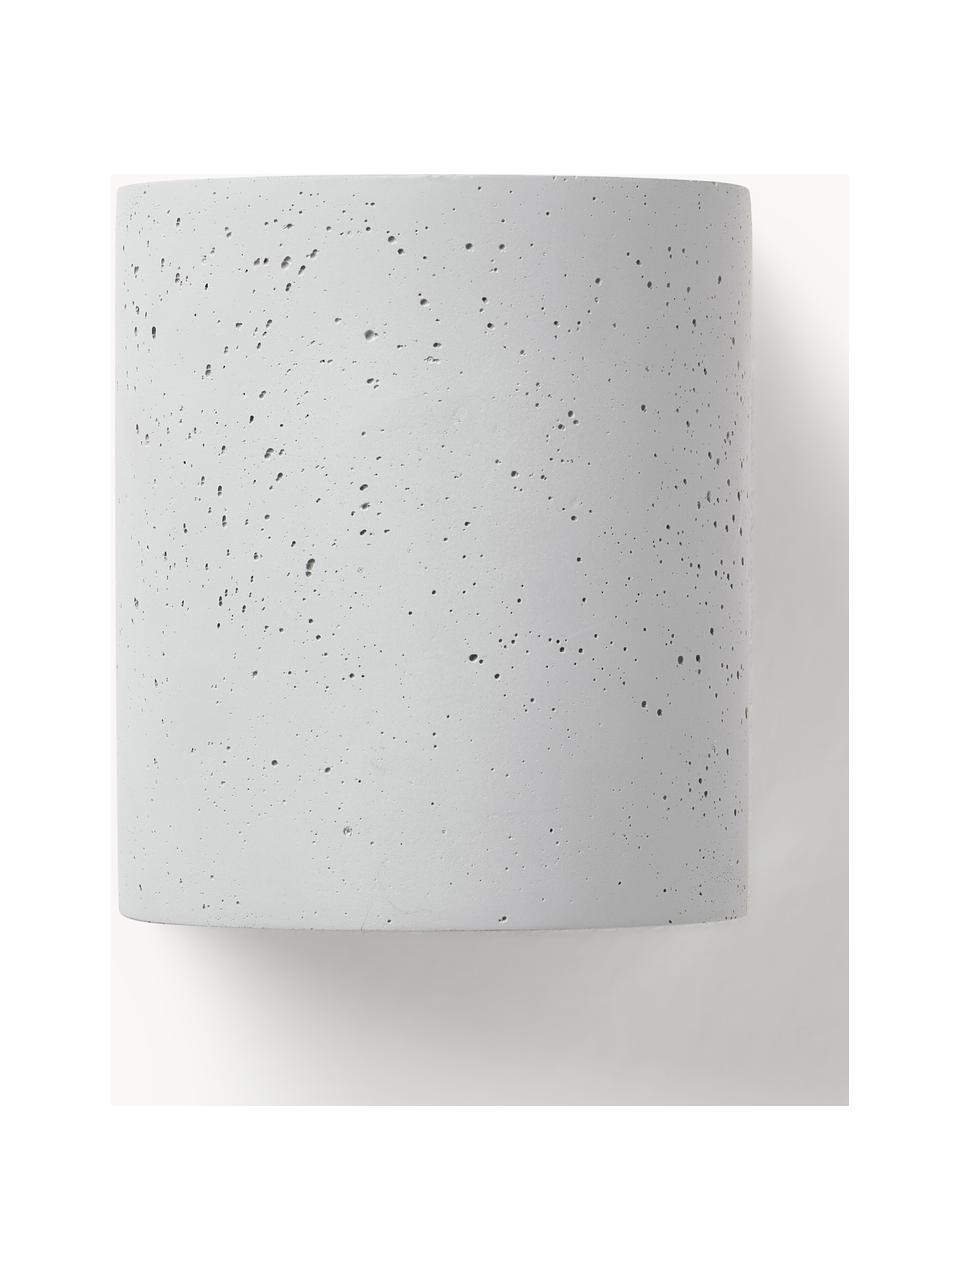 Lampada da parete a LED da esterno in cemento Kyra, Cemento, Grigio, Larg. 13 x Alt. 15 cm